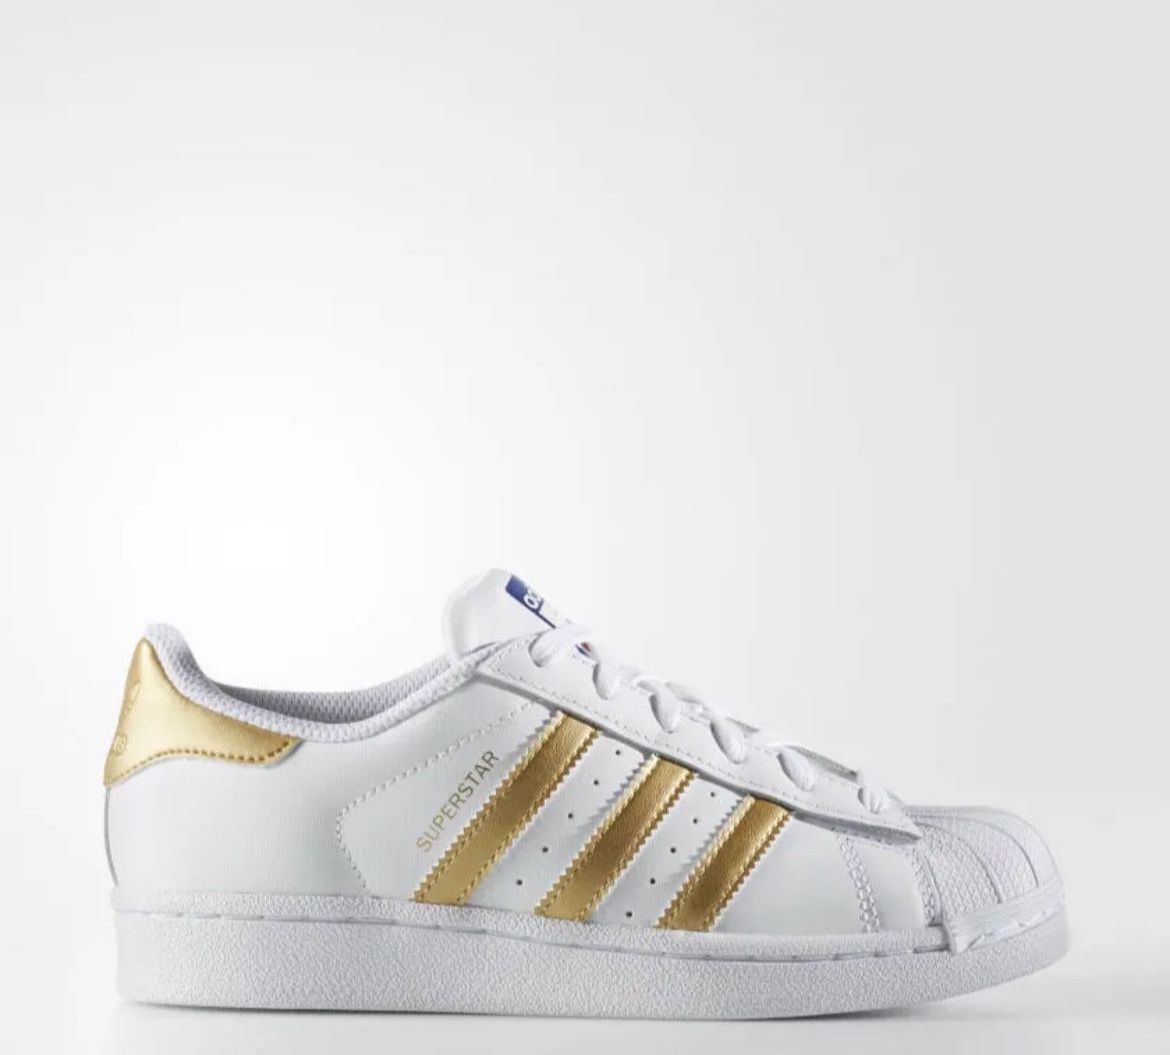 Adidas Superstar Running Shoes Sneaker White Gold Metallic 7.5 in women or 6.5 Big Kid/men 